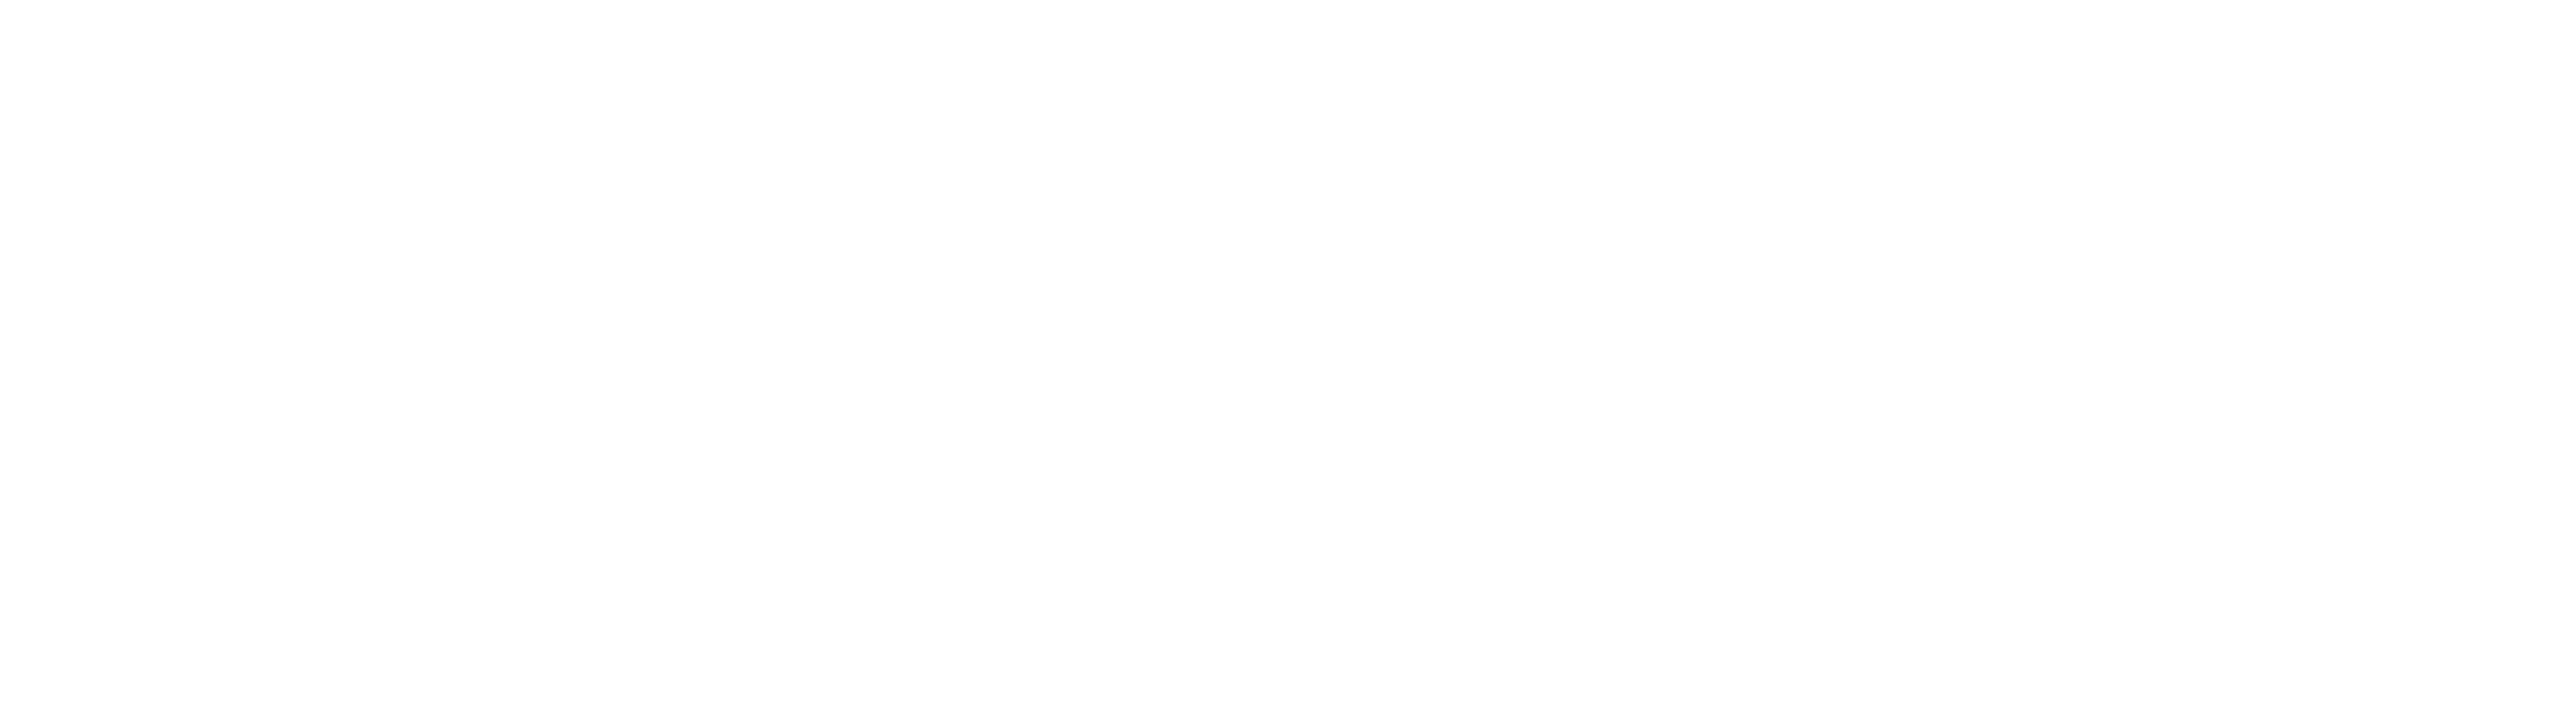 Arbeidspsychologisch Advies (APA) B.V.